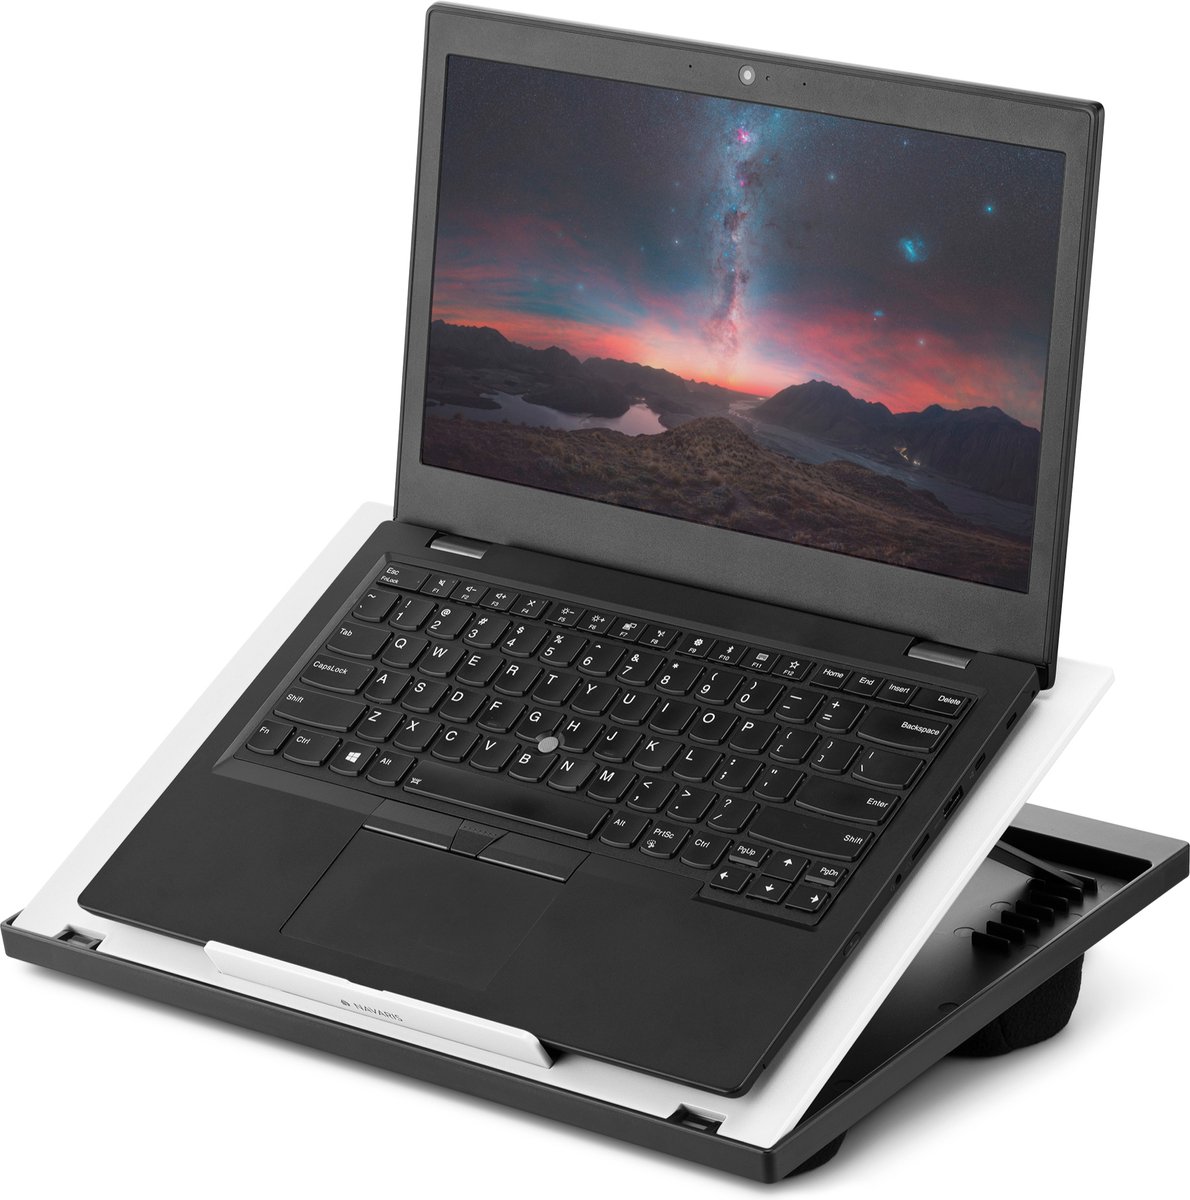 Navaris laptop standaard - Verstelbare laptoptafel voor op schoot - Laptopstandaard met kussen aan de onderkant - Schootkussen - Wit